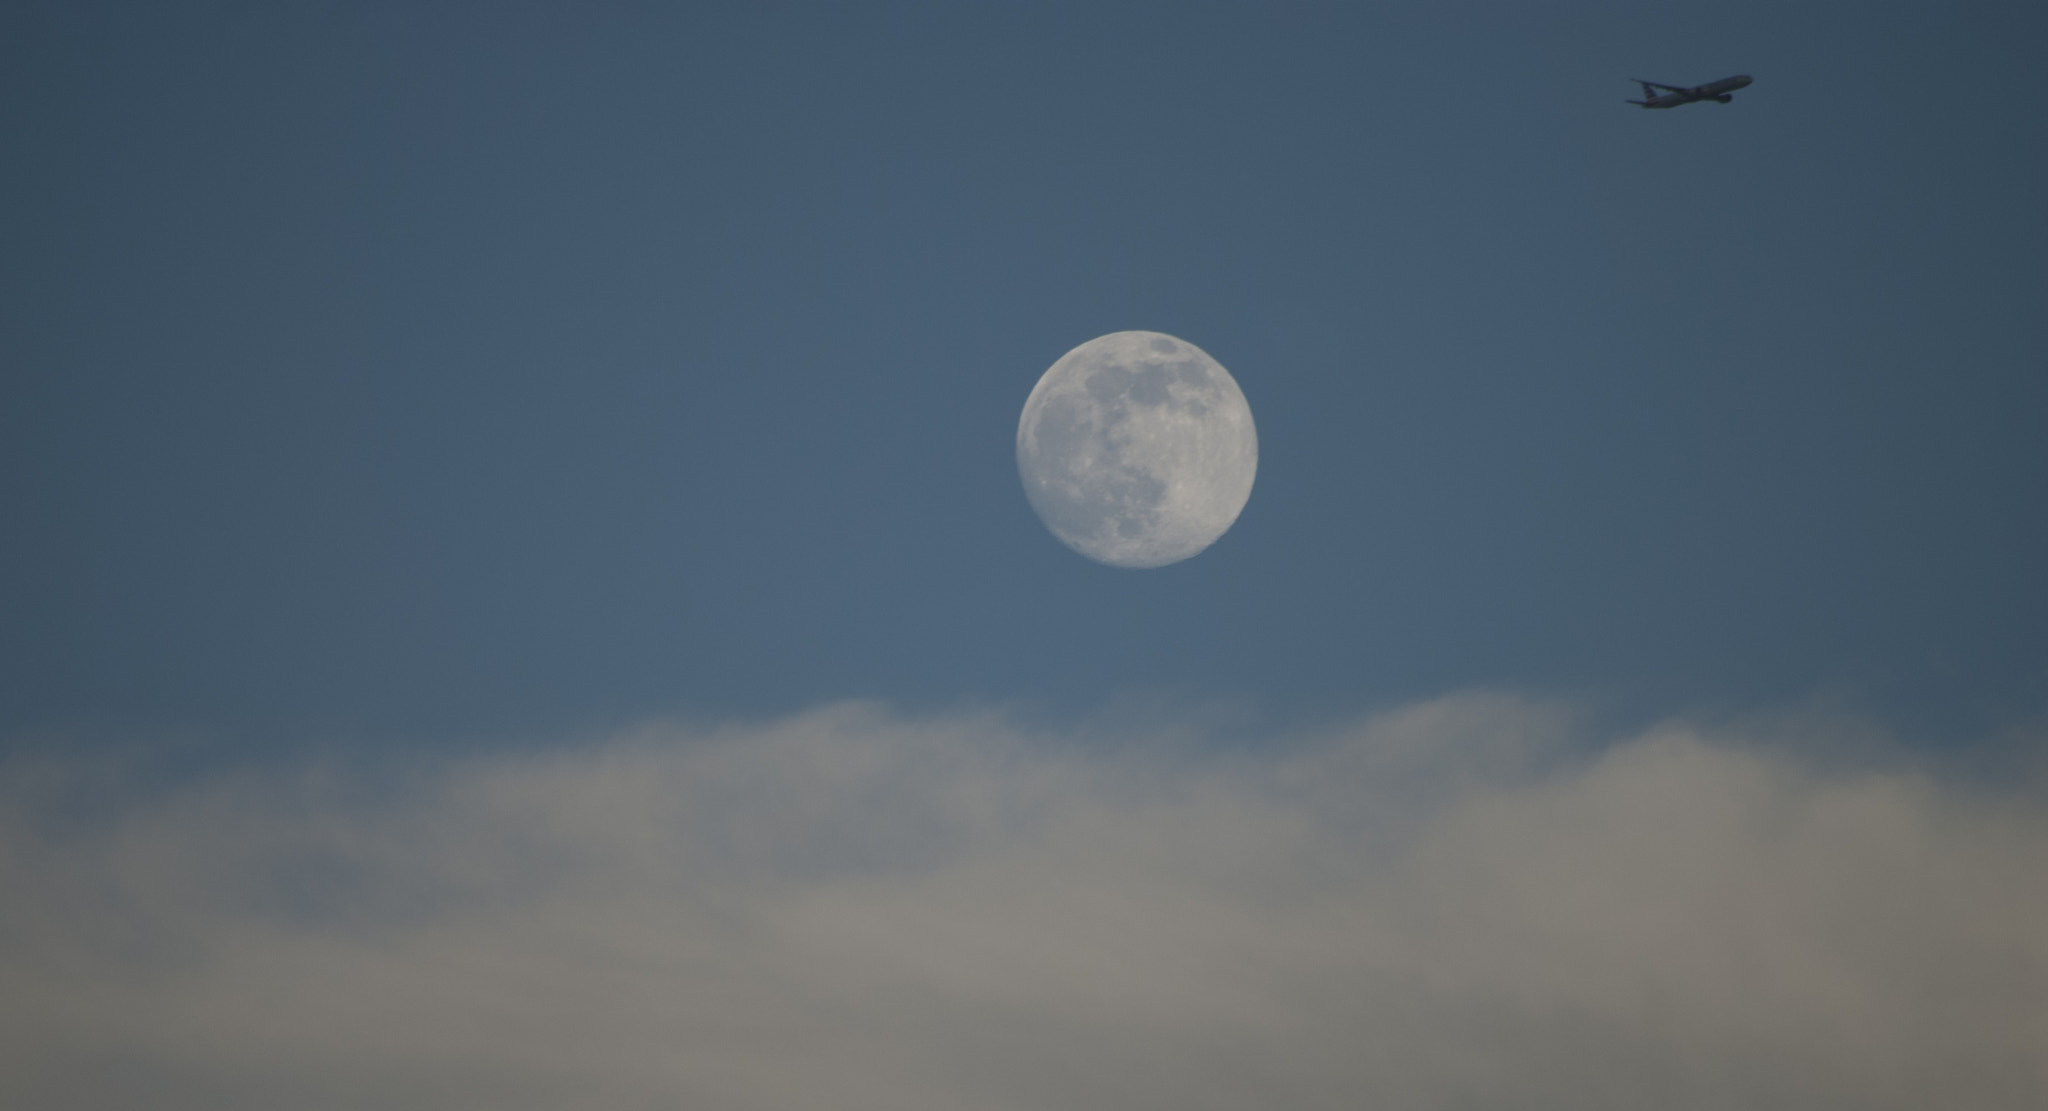 Nikon D80 sample photo. Lunar flight photography